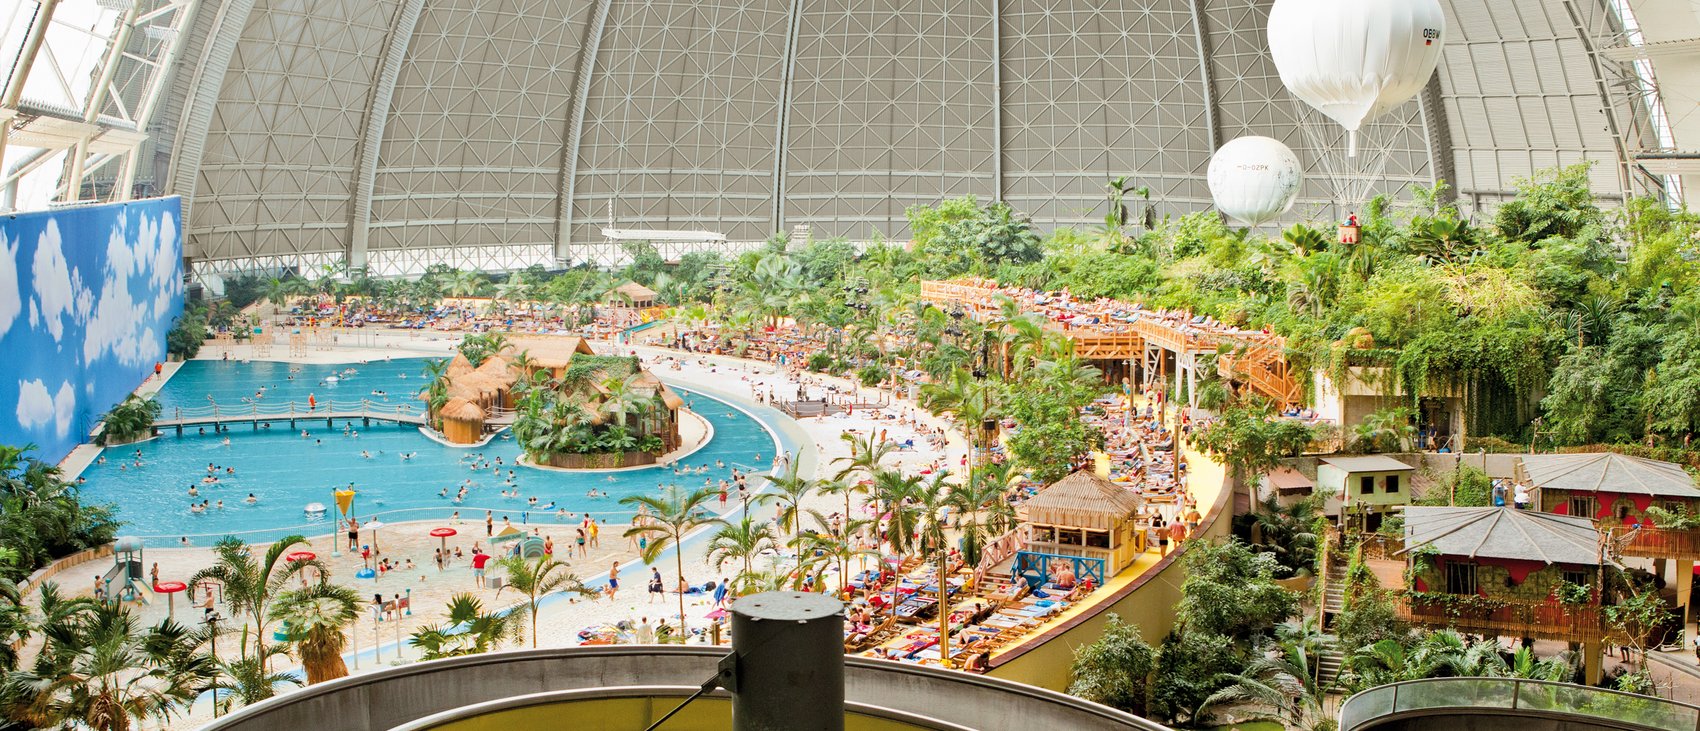 Аквапарк в германии под куполом - tropical islands resort, цены в тропическом аквапарке